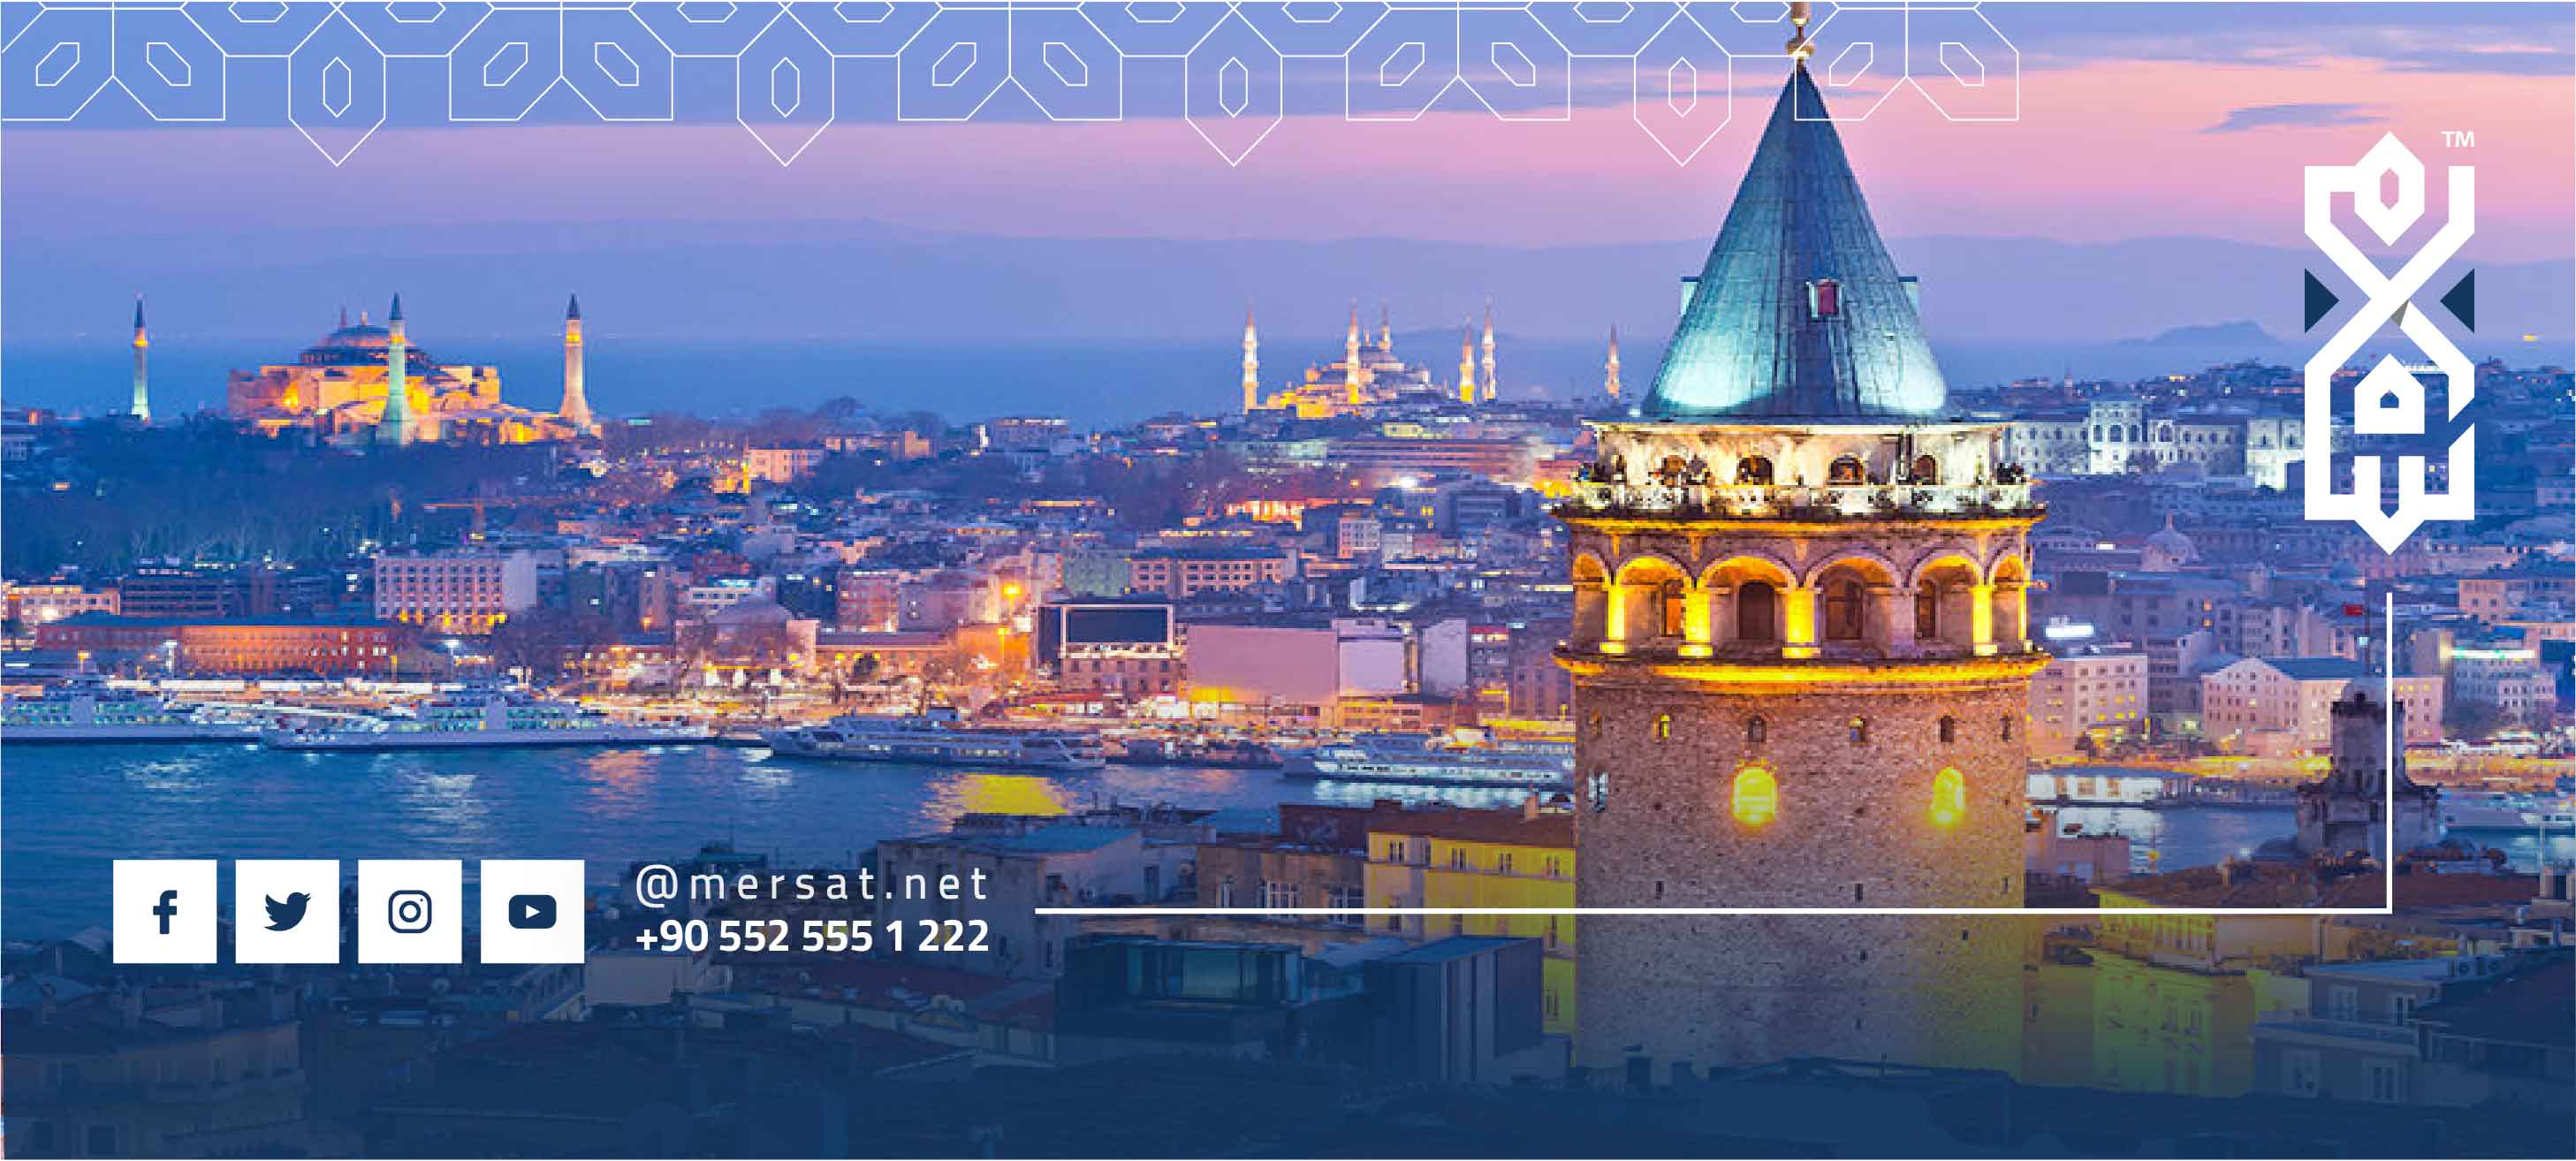 إن سافرت إلى تركيا لا تنسى أن تزور هذه المعالم في إسطنبول الأوروبية